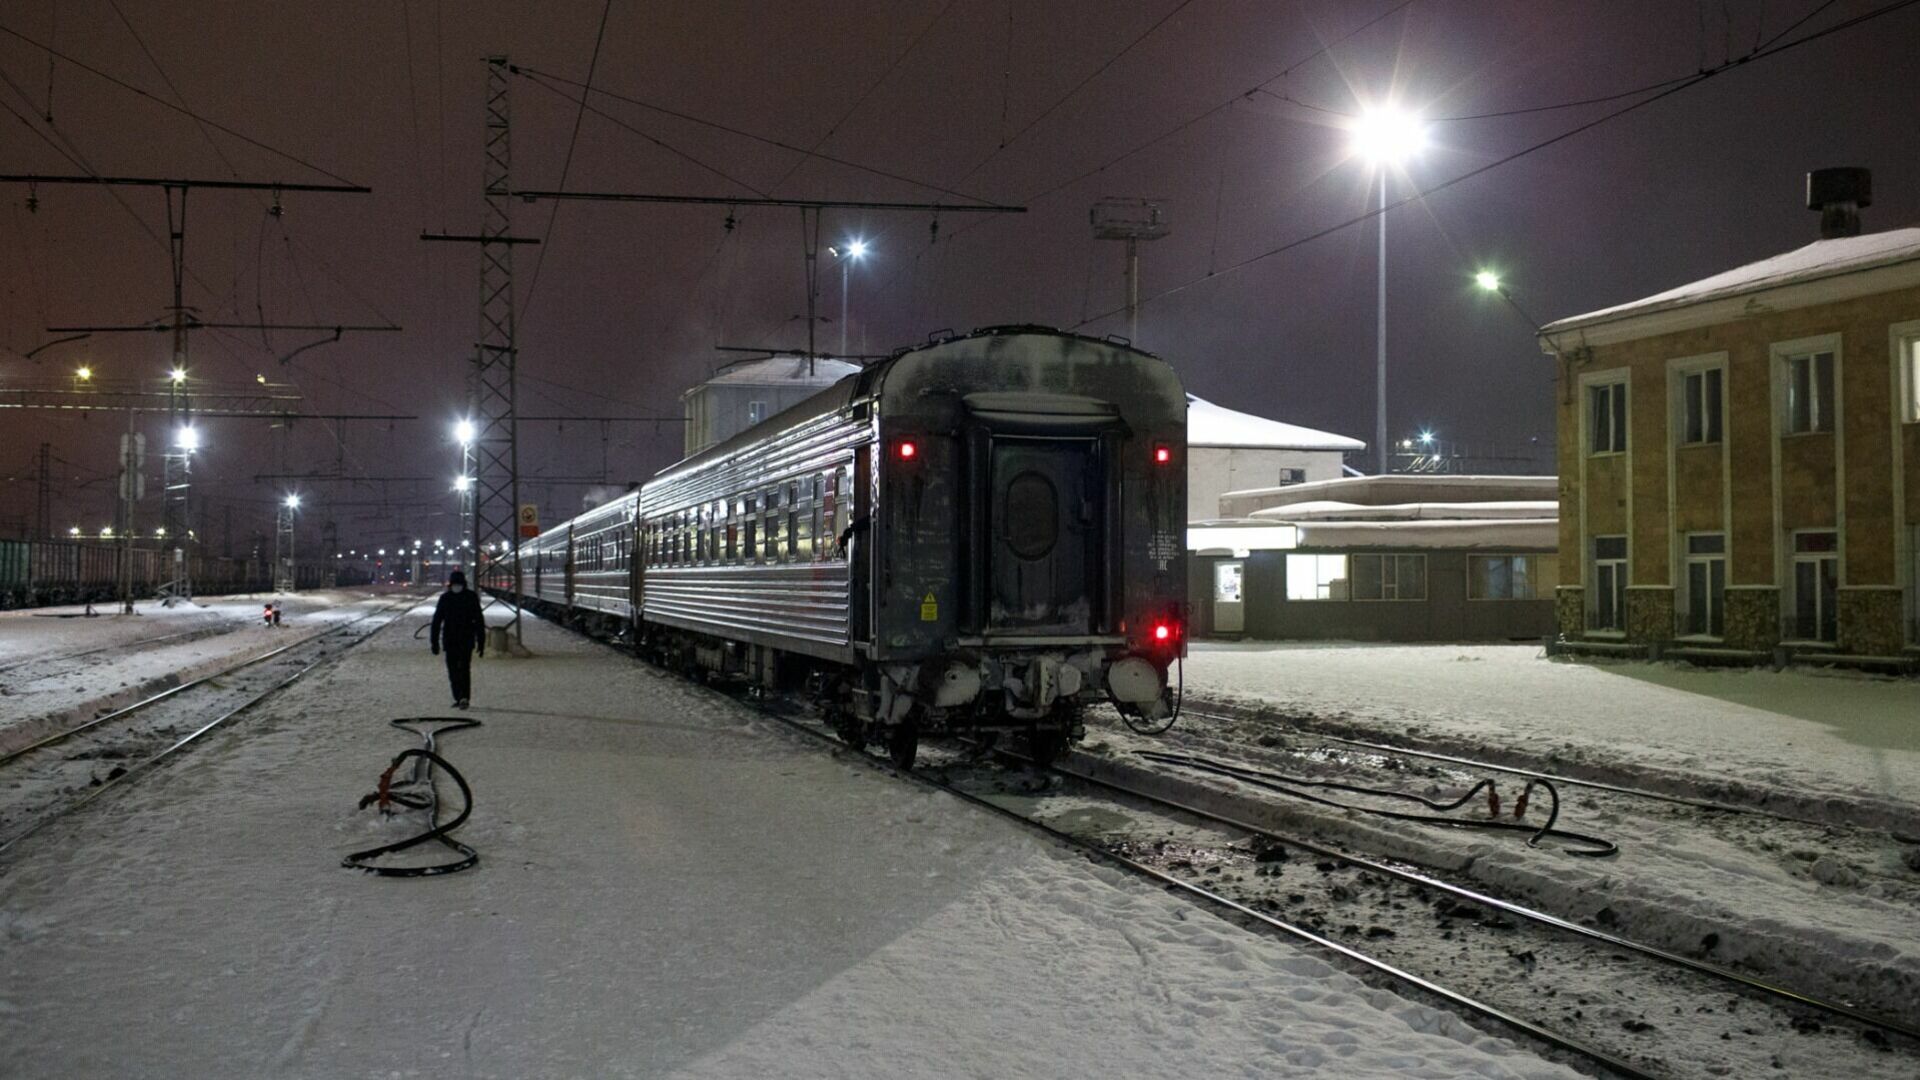 Скидку для поездок в поездах предоставят пенсионерам в Челябинской области